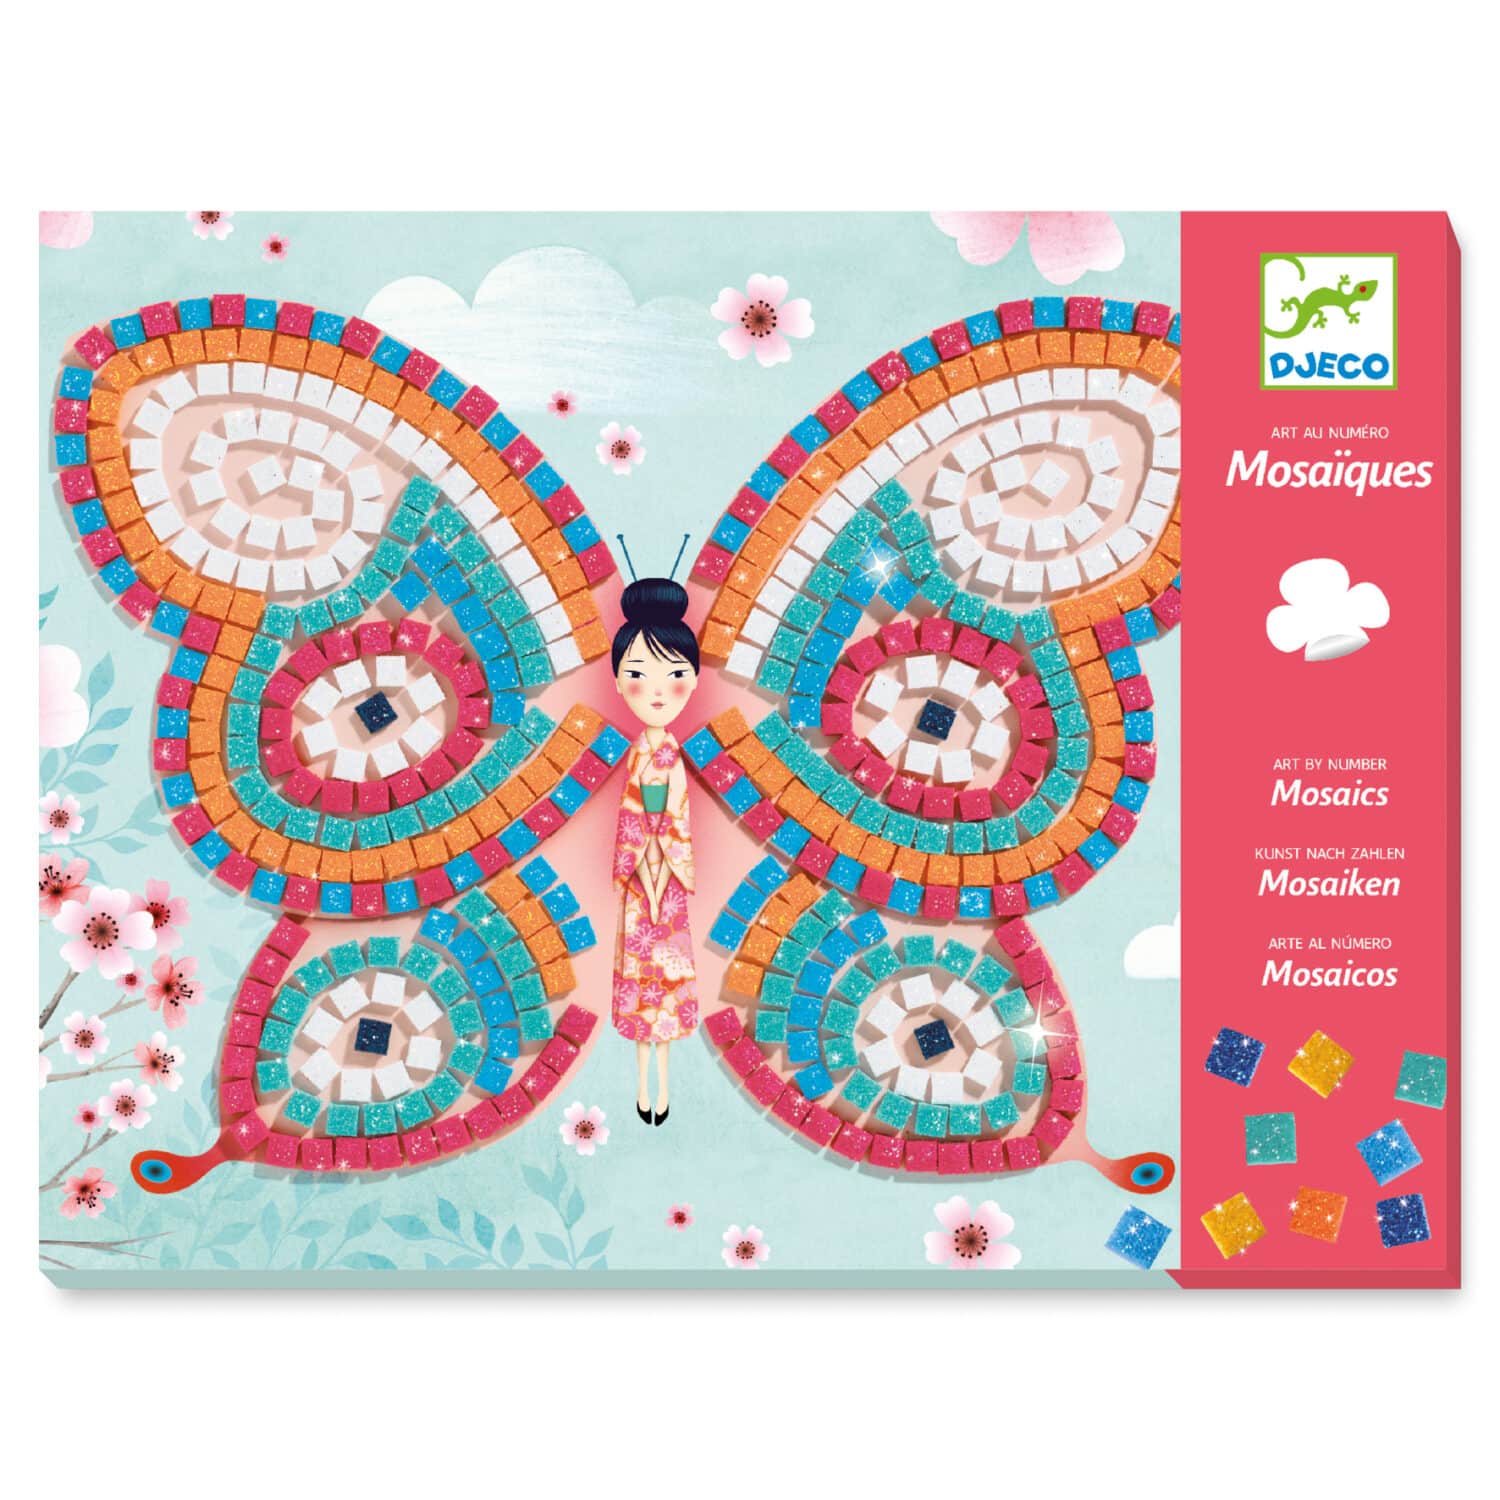 Mosaics Butterflies